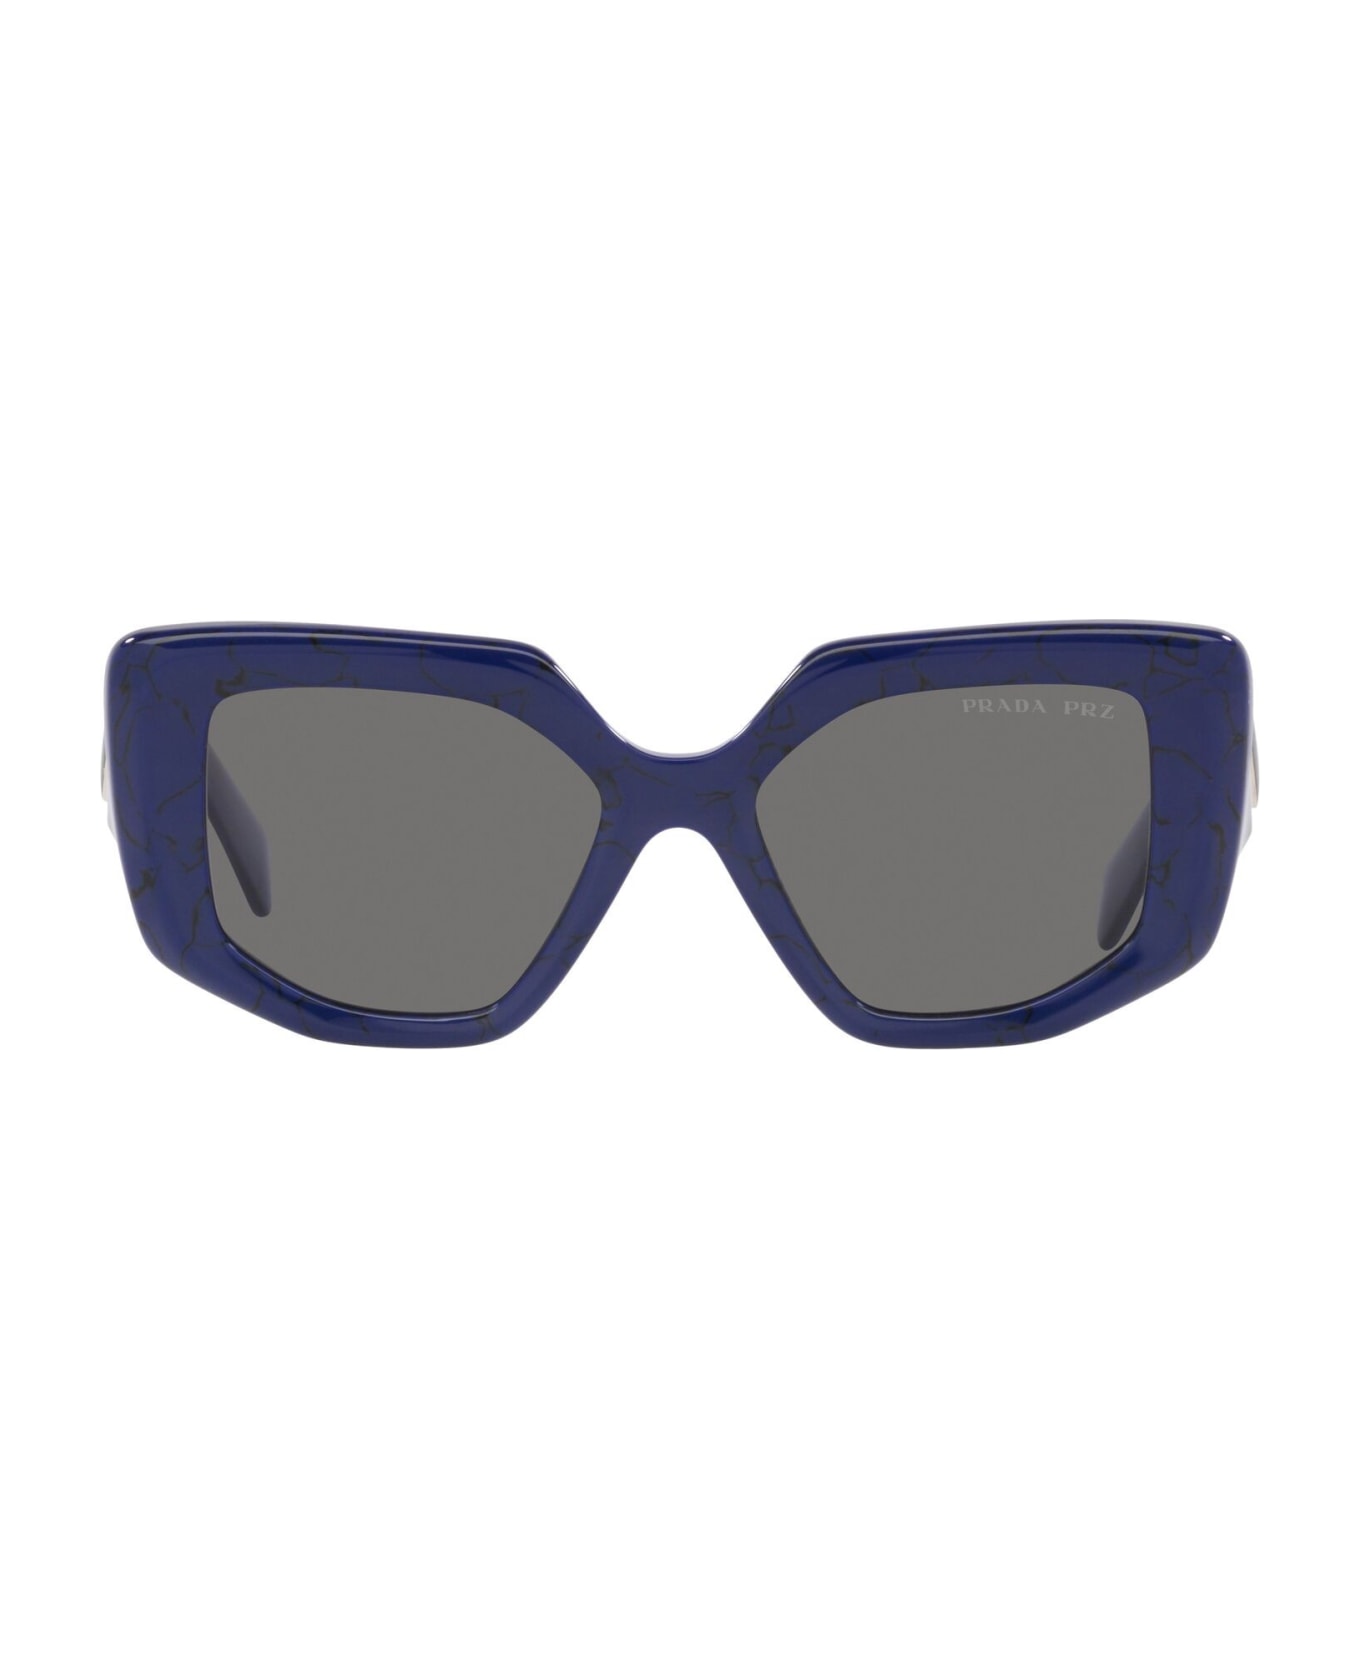 Prada Eyewear Sunglasses Oakley - Blu/Grigio